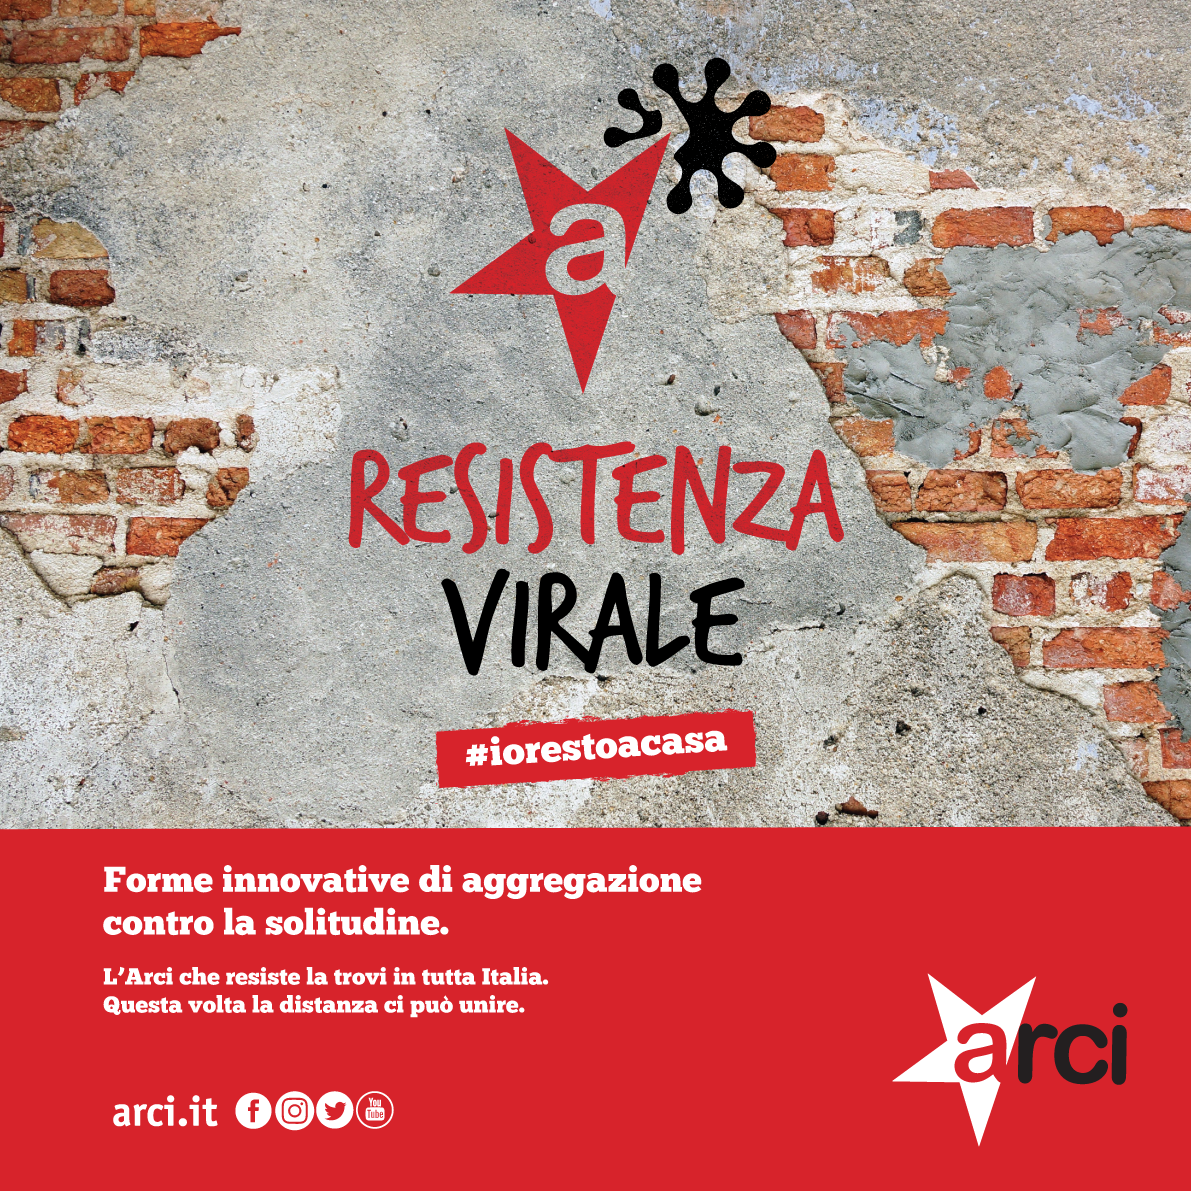 RESISTENZA VIRALE – #iorestoacasa